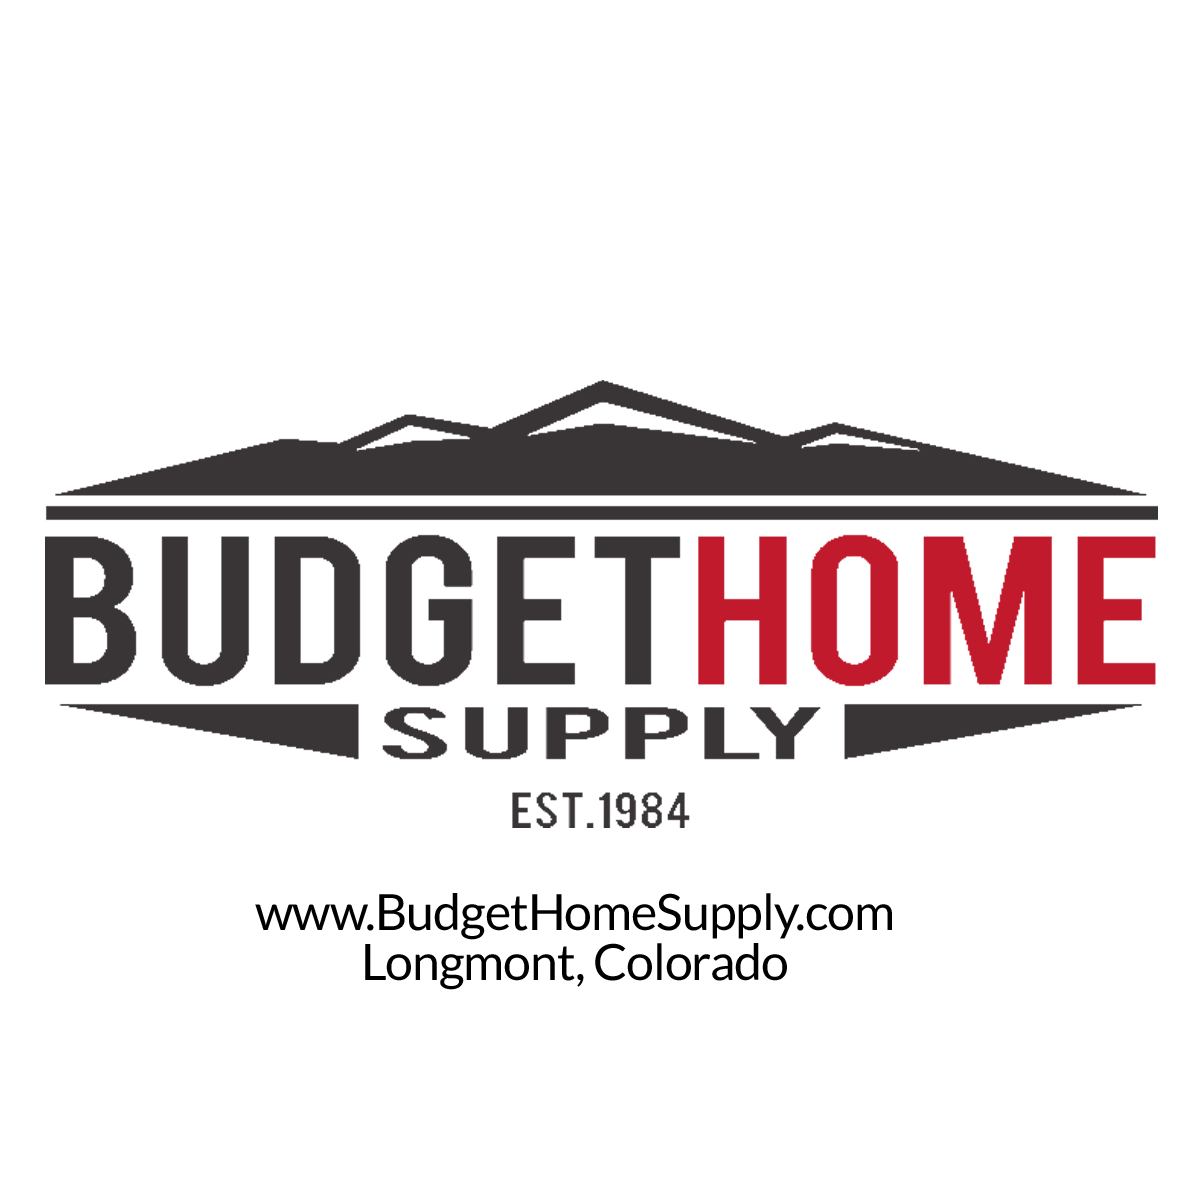 (c) Budgethomesupply.com